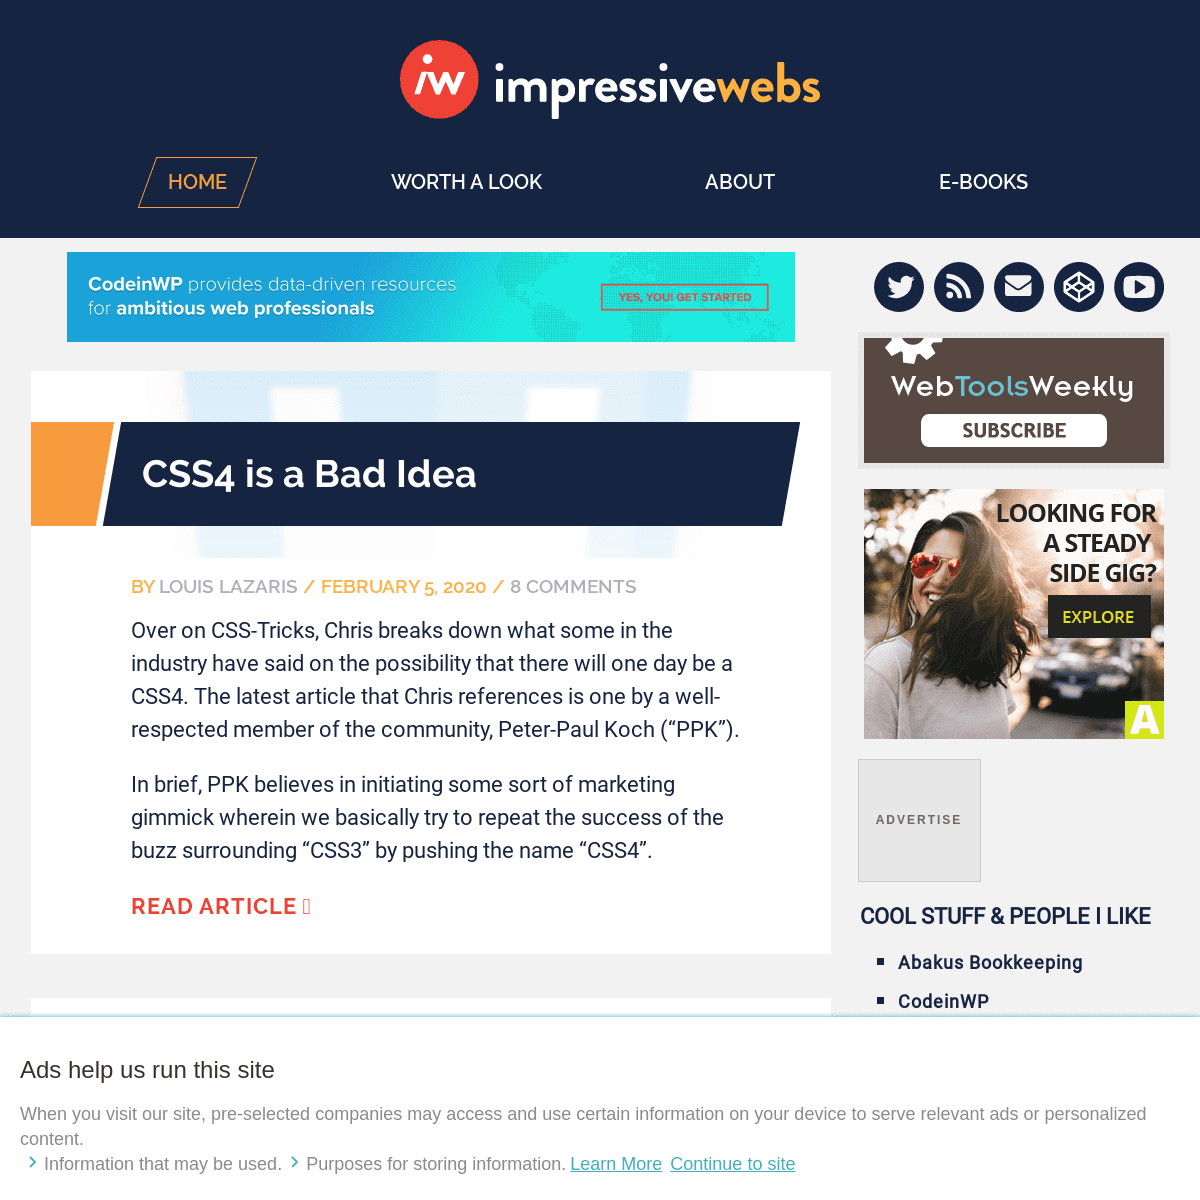 A complete backup of impressivewebs.com